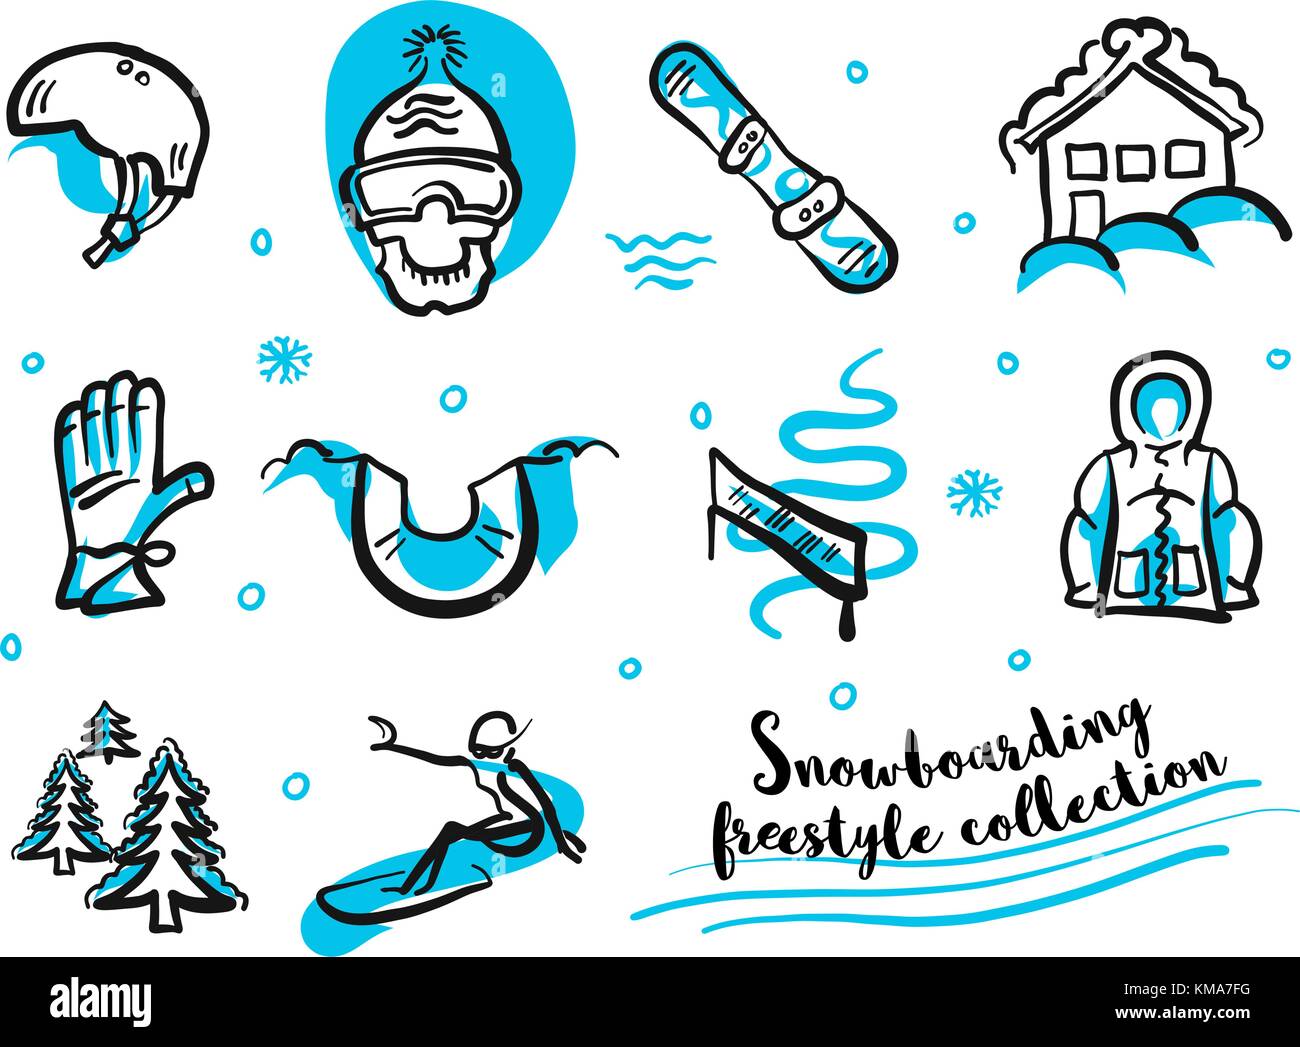 Snowboard Freestyle Sammlung Icon Set. Handdrawn blaue und schwarze Linien auf weißem getrennt. Schnell und Skizzen. Stock Vektor